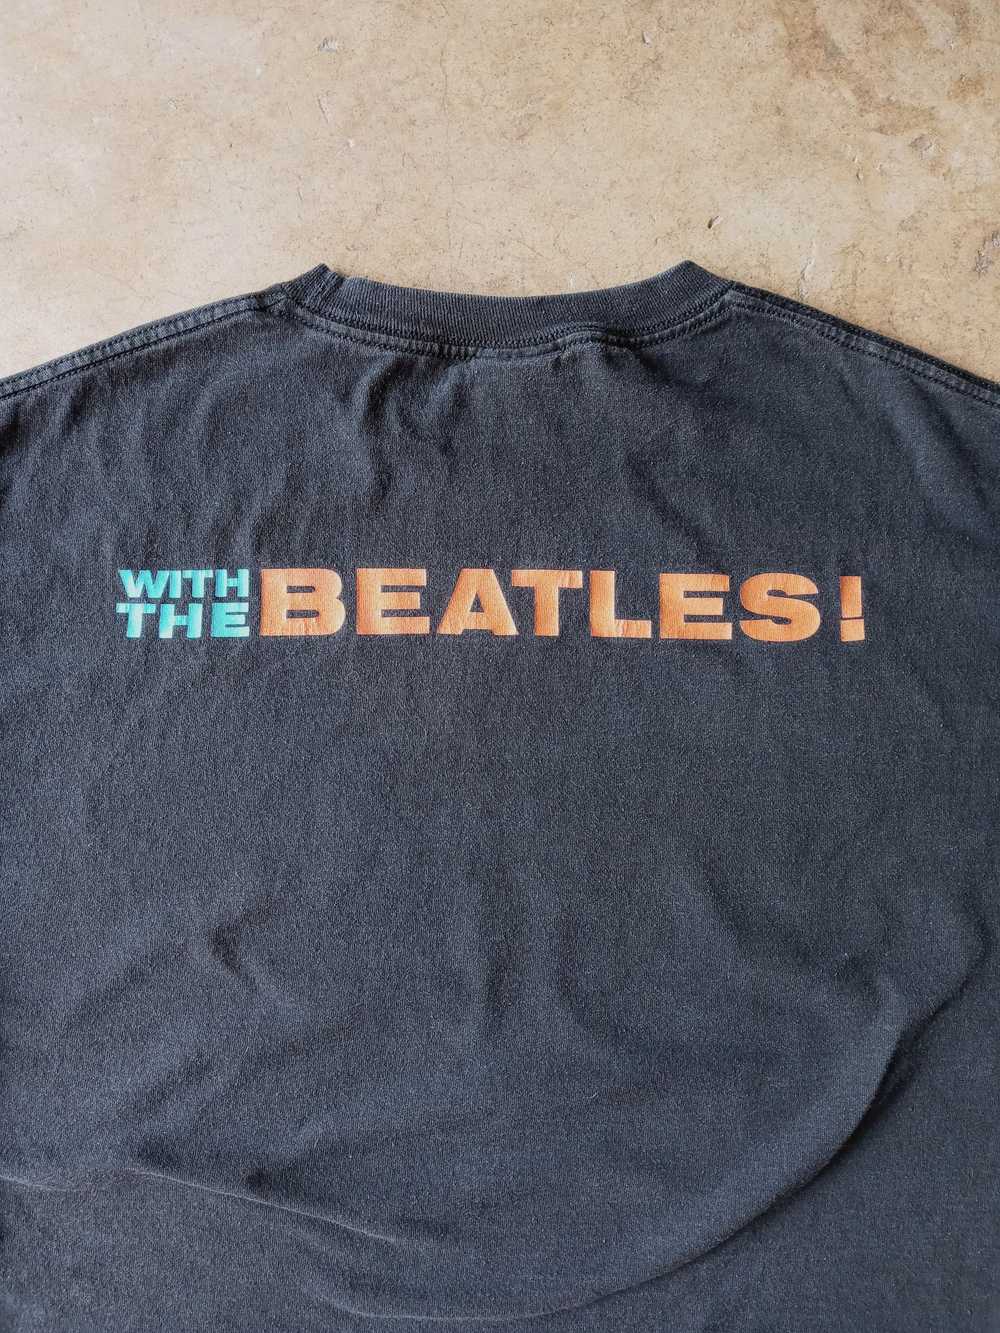 Band Tees × Streetwear × Vintage Vintage Beatles … - image 6